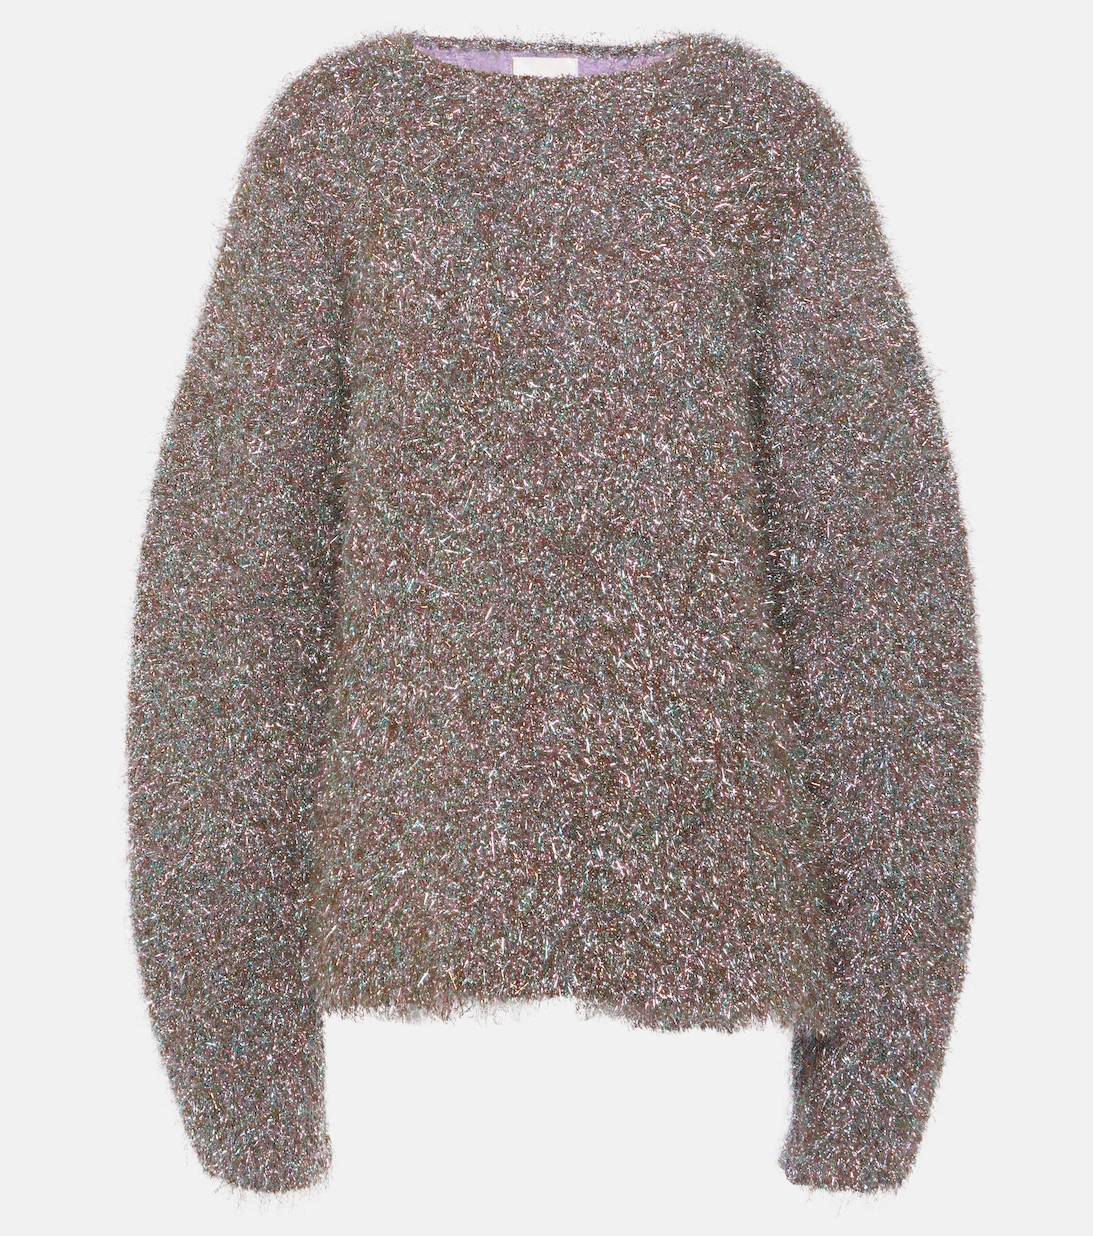 Oryginalny sweter świąteczny z kolekcji Jil Sander, ok. 5200 zł (Fot. materiały prasowe)